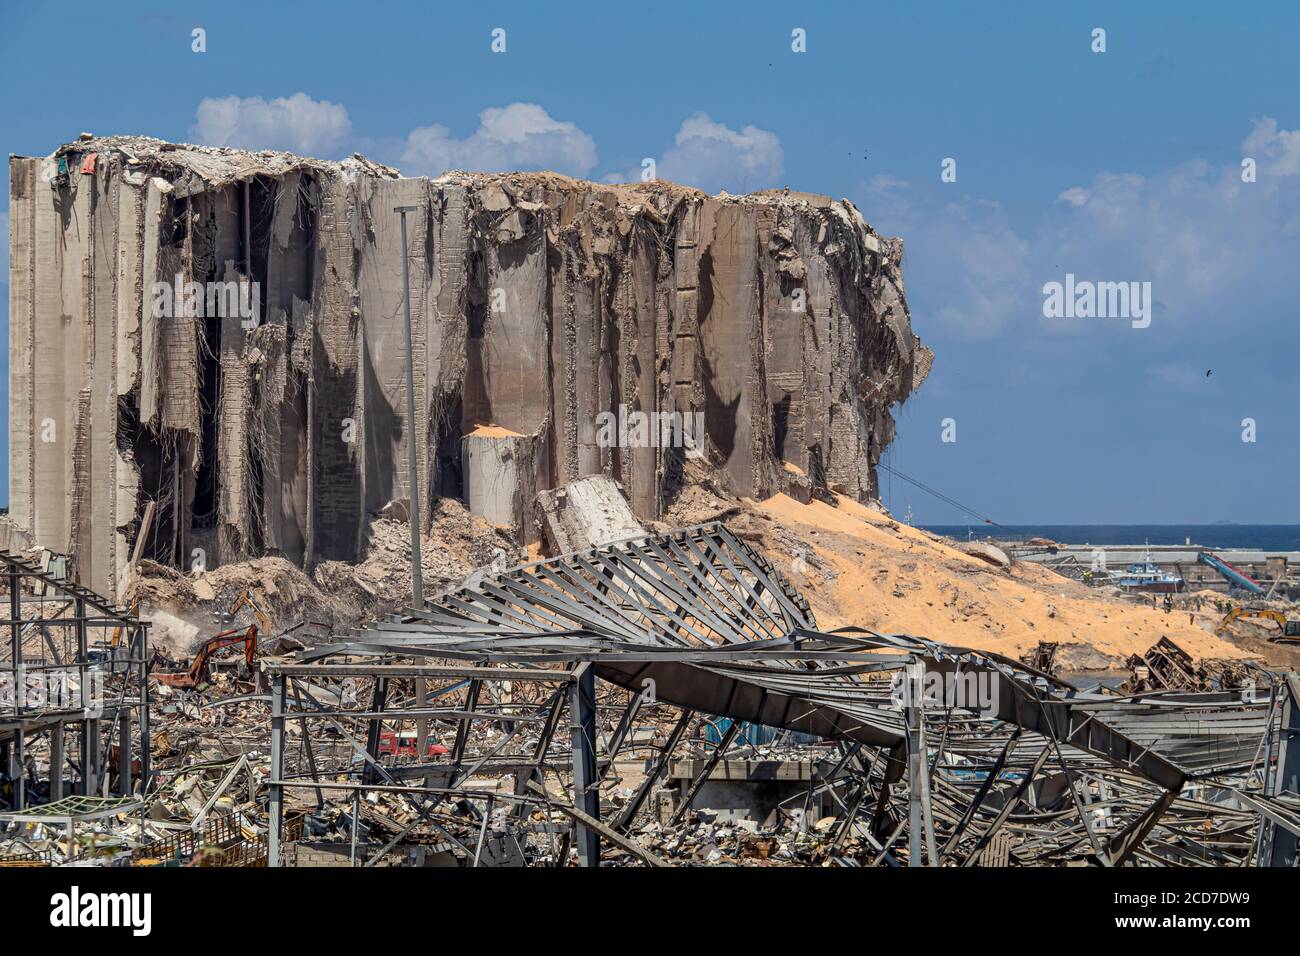 Beirut / Líbano - 08 27 2020: Foto del sitio de explosión masiva que ocurrió en el puerto de Beirut Foto de stock